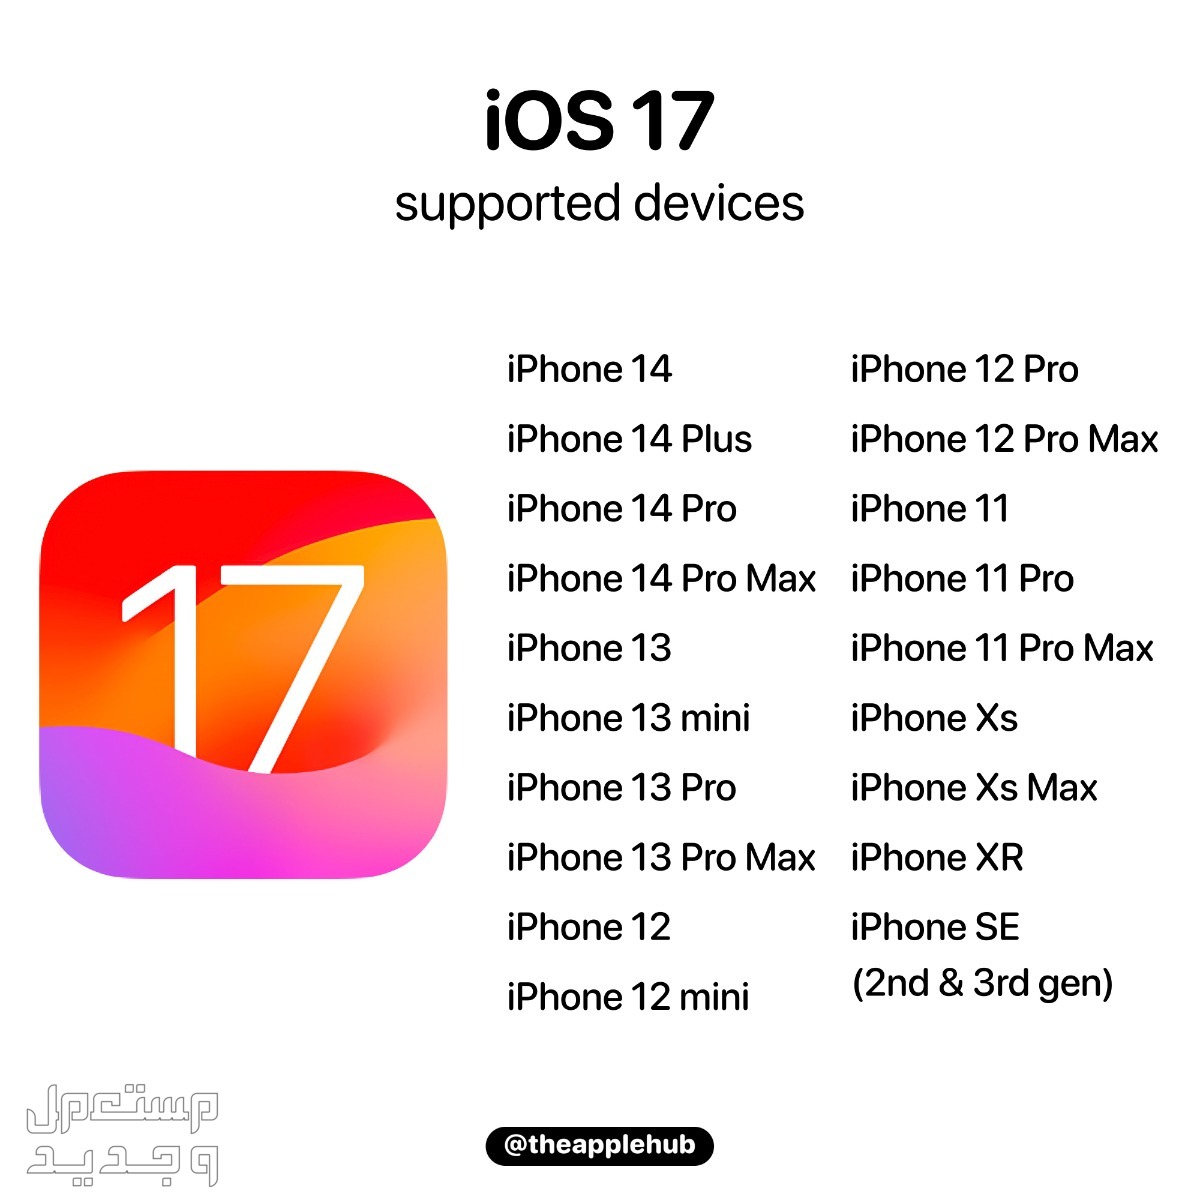 نظام iOS 17 لهواتف ايفون بمميزات جديدة تعرف عليها في السودان